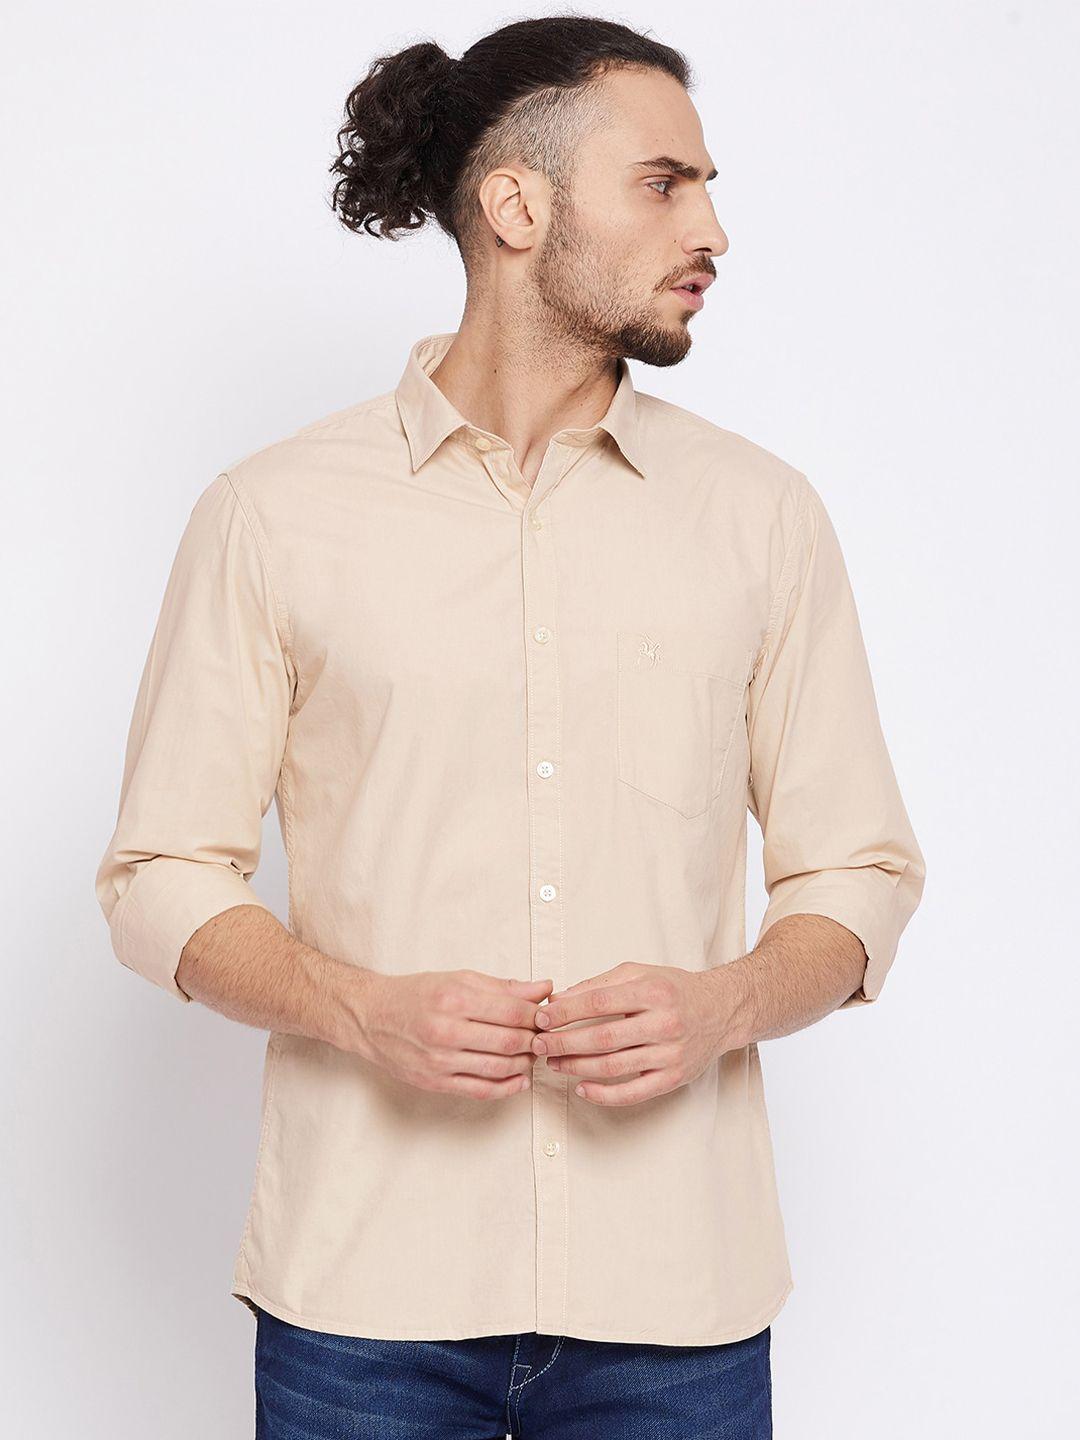 cantabil men khaki opaque casual cotton shirt